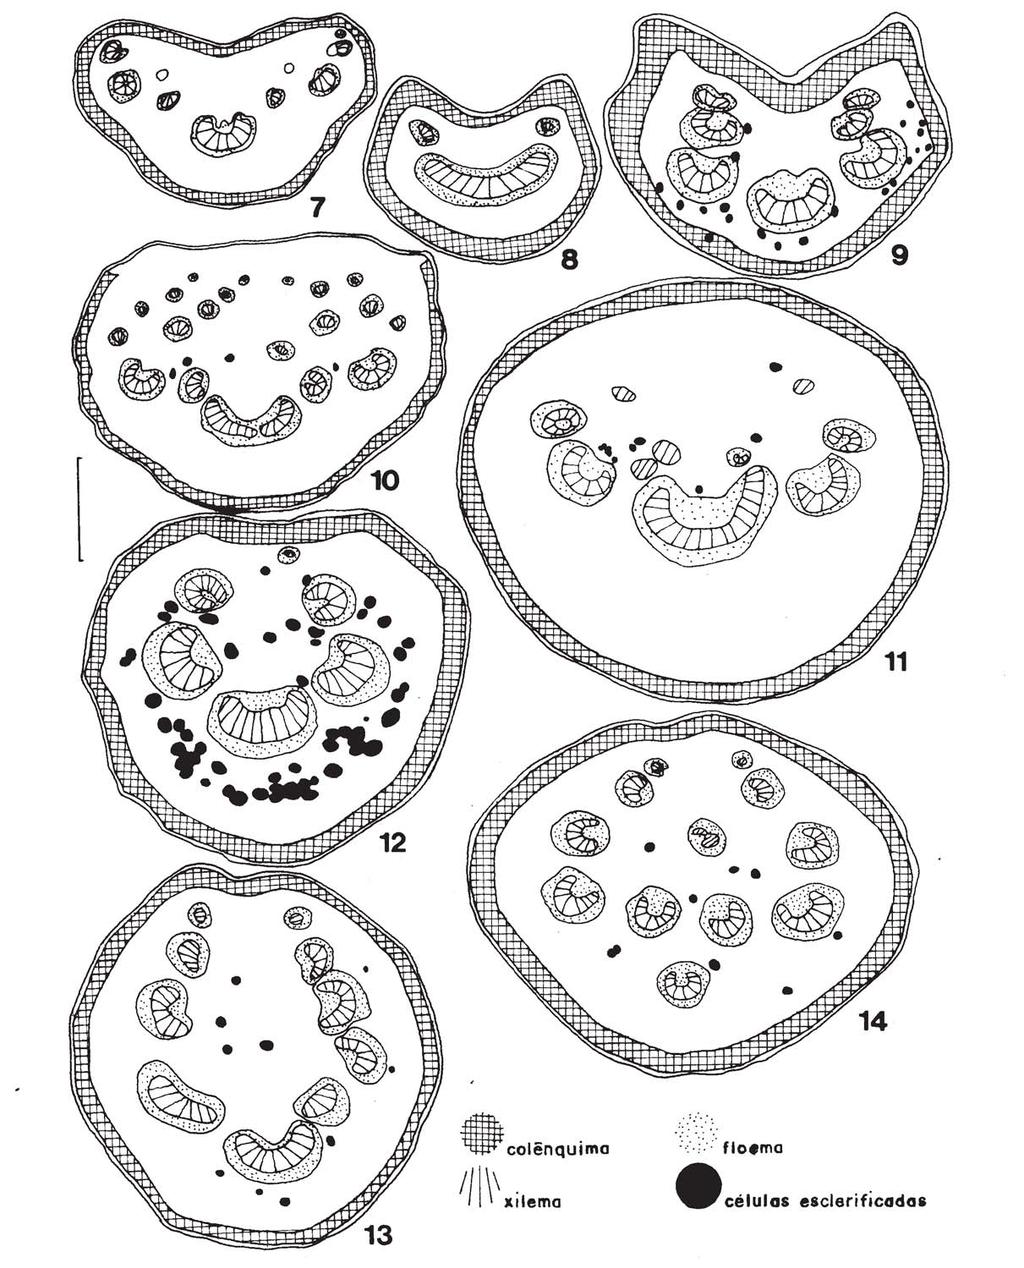 992 Reis, Proença & Sajo: Vascularização foliar e anatomia do pecíolo de Melastomataceae do cerrado... Figuras 7-14. Diagramas de seções transversais de pecíolos. 7-9.